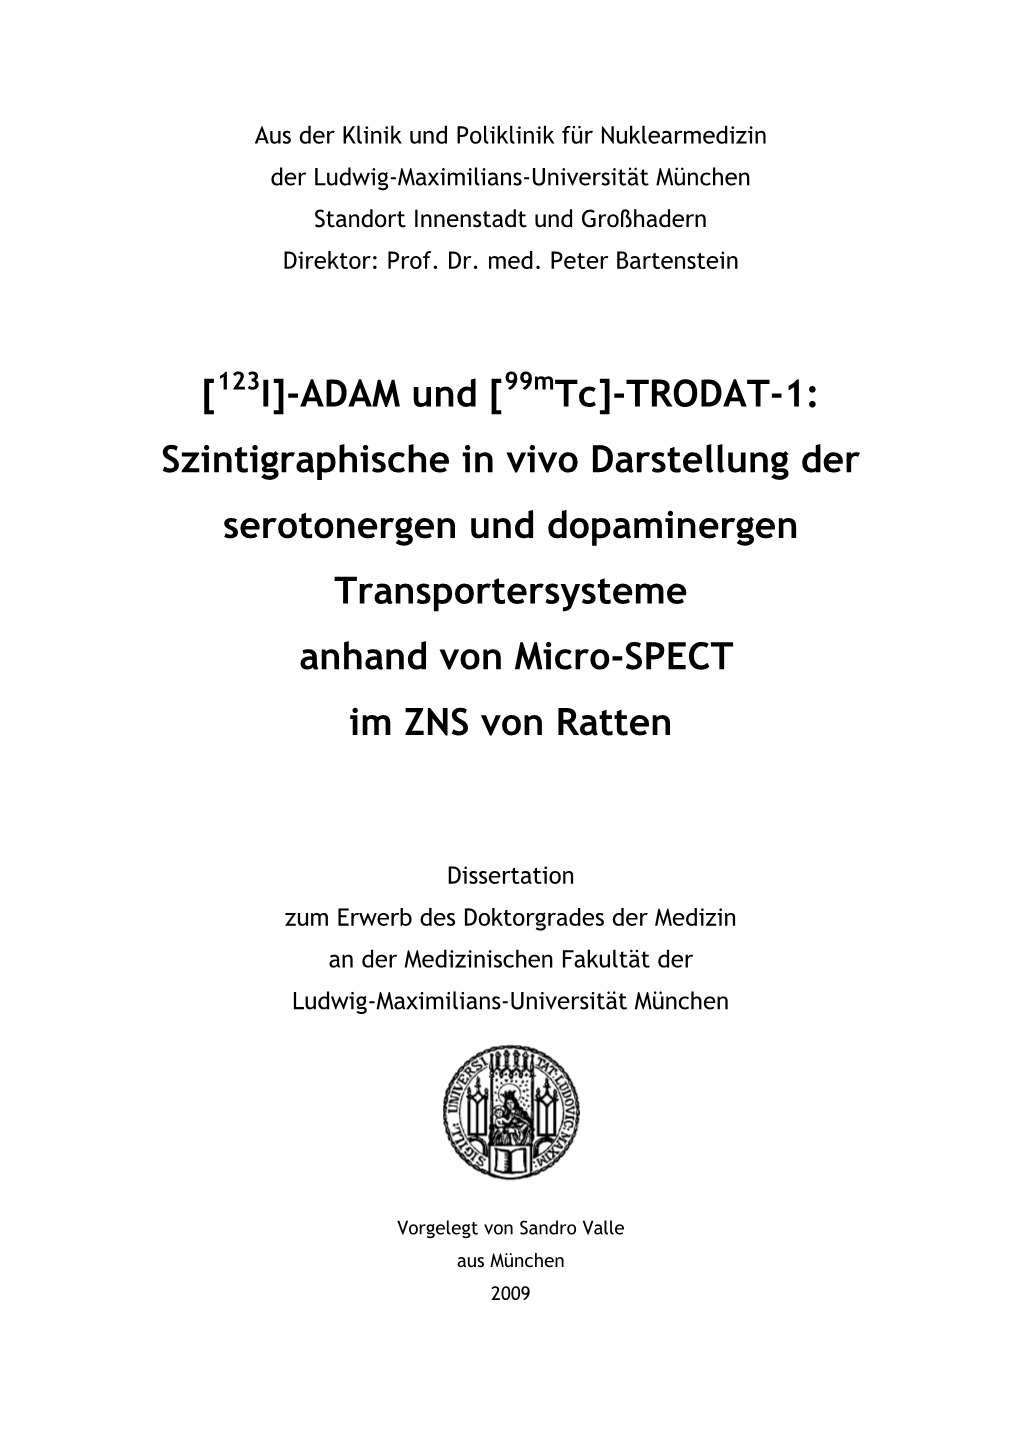 [123I]-ADAM Und [99Mtc]-TRODAT-1: Szintigraphische in Vivo Darstellung